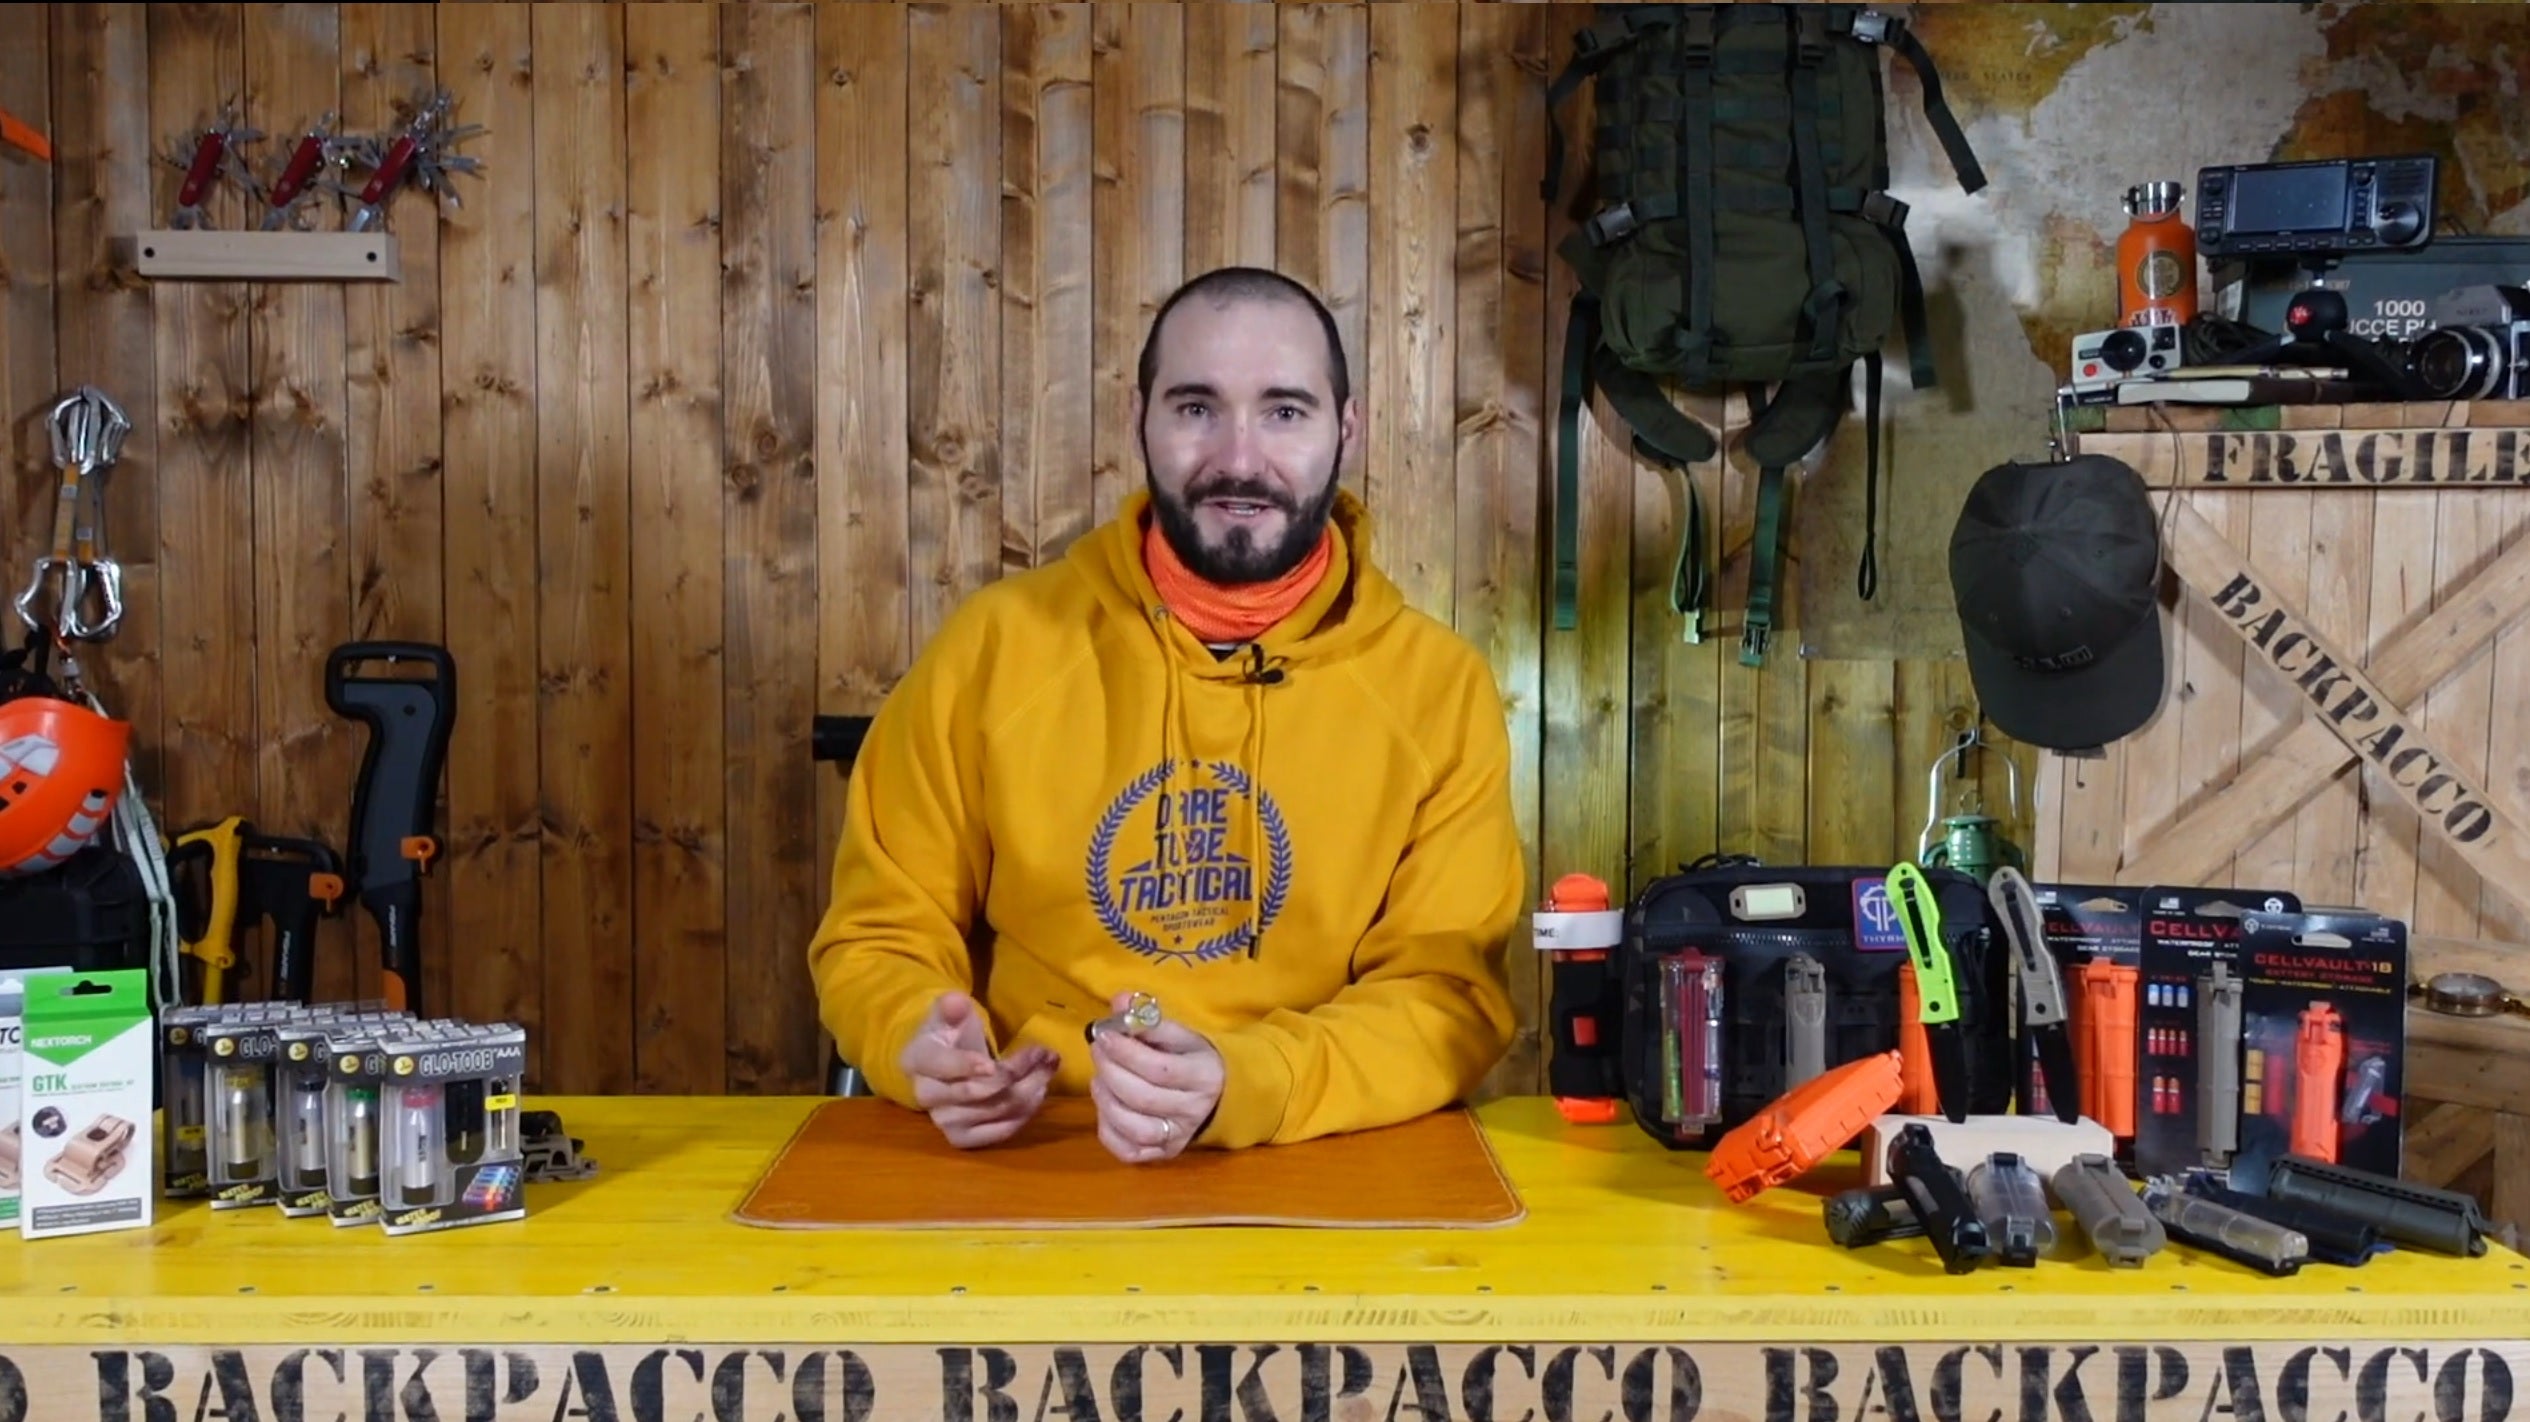 Copertina del video dove Paolo di backpacco spiega la GT-AAA Glo-Toob di NexTorch